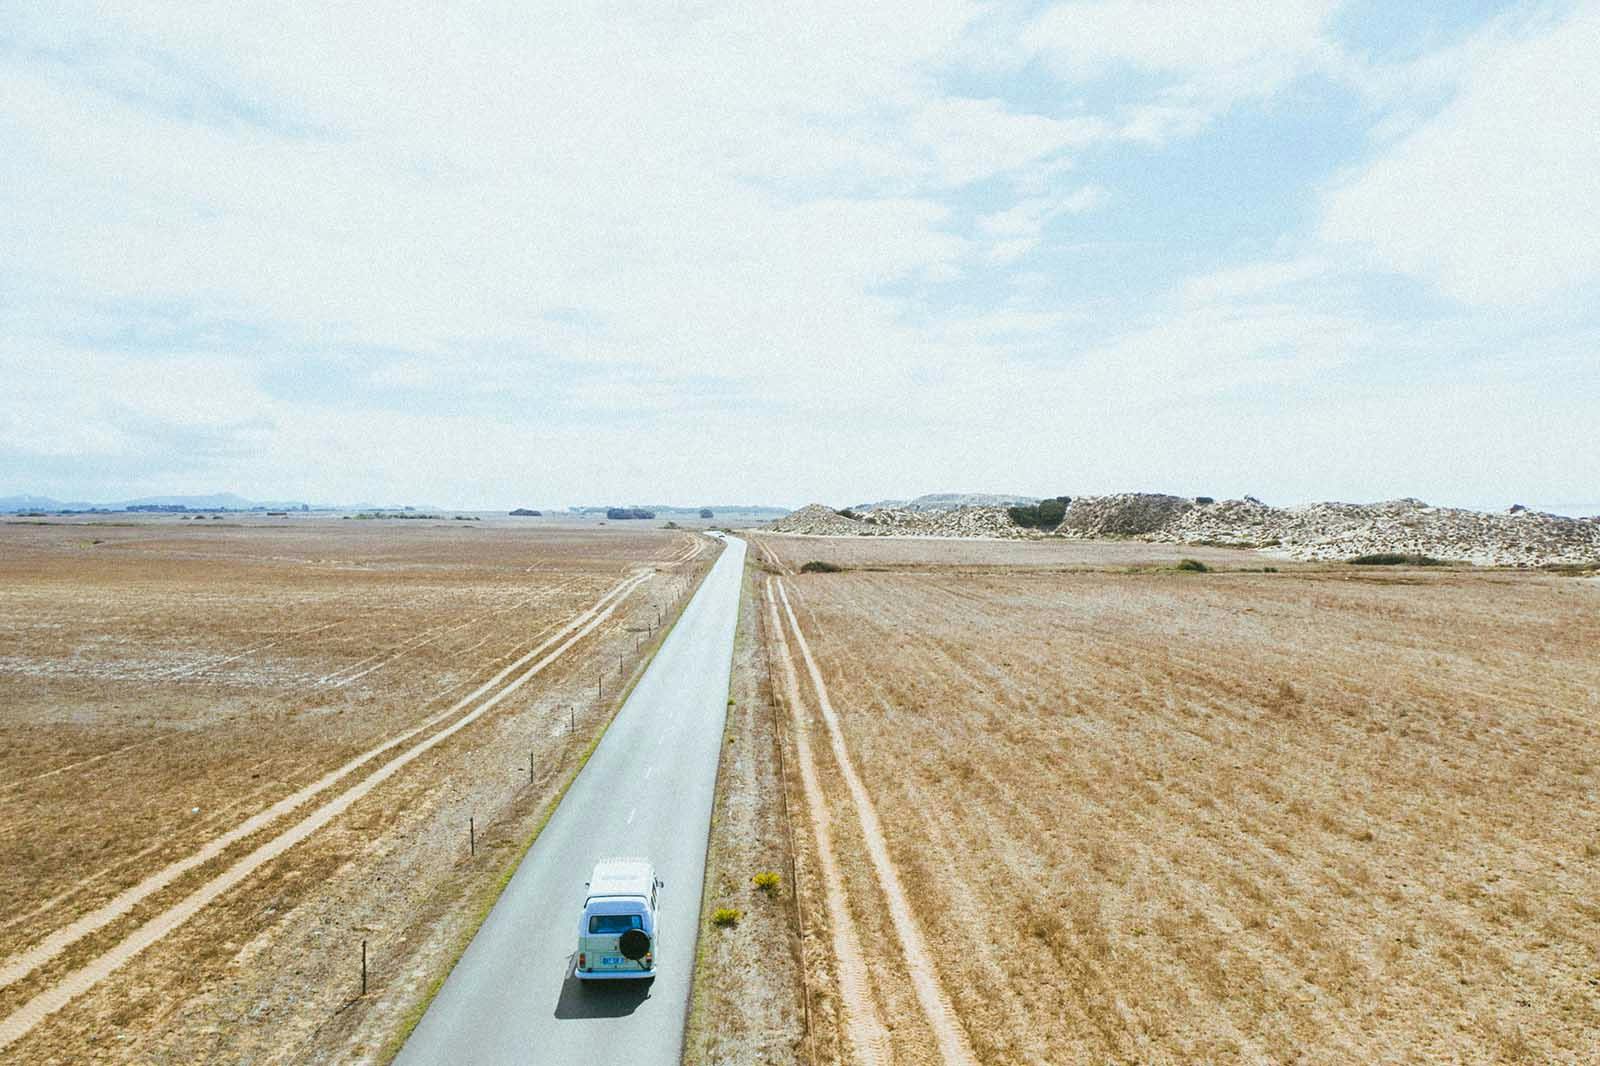 Alquiler VW camper: Autocaravana kombi vintage VW conduciendo por una carretera desertica en Portugal.